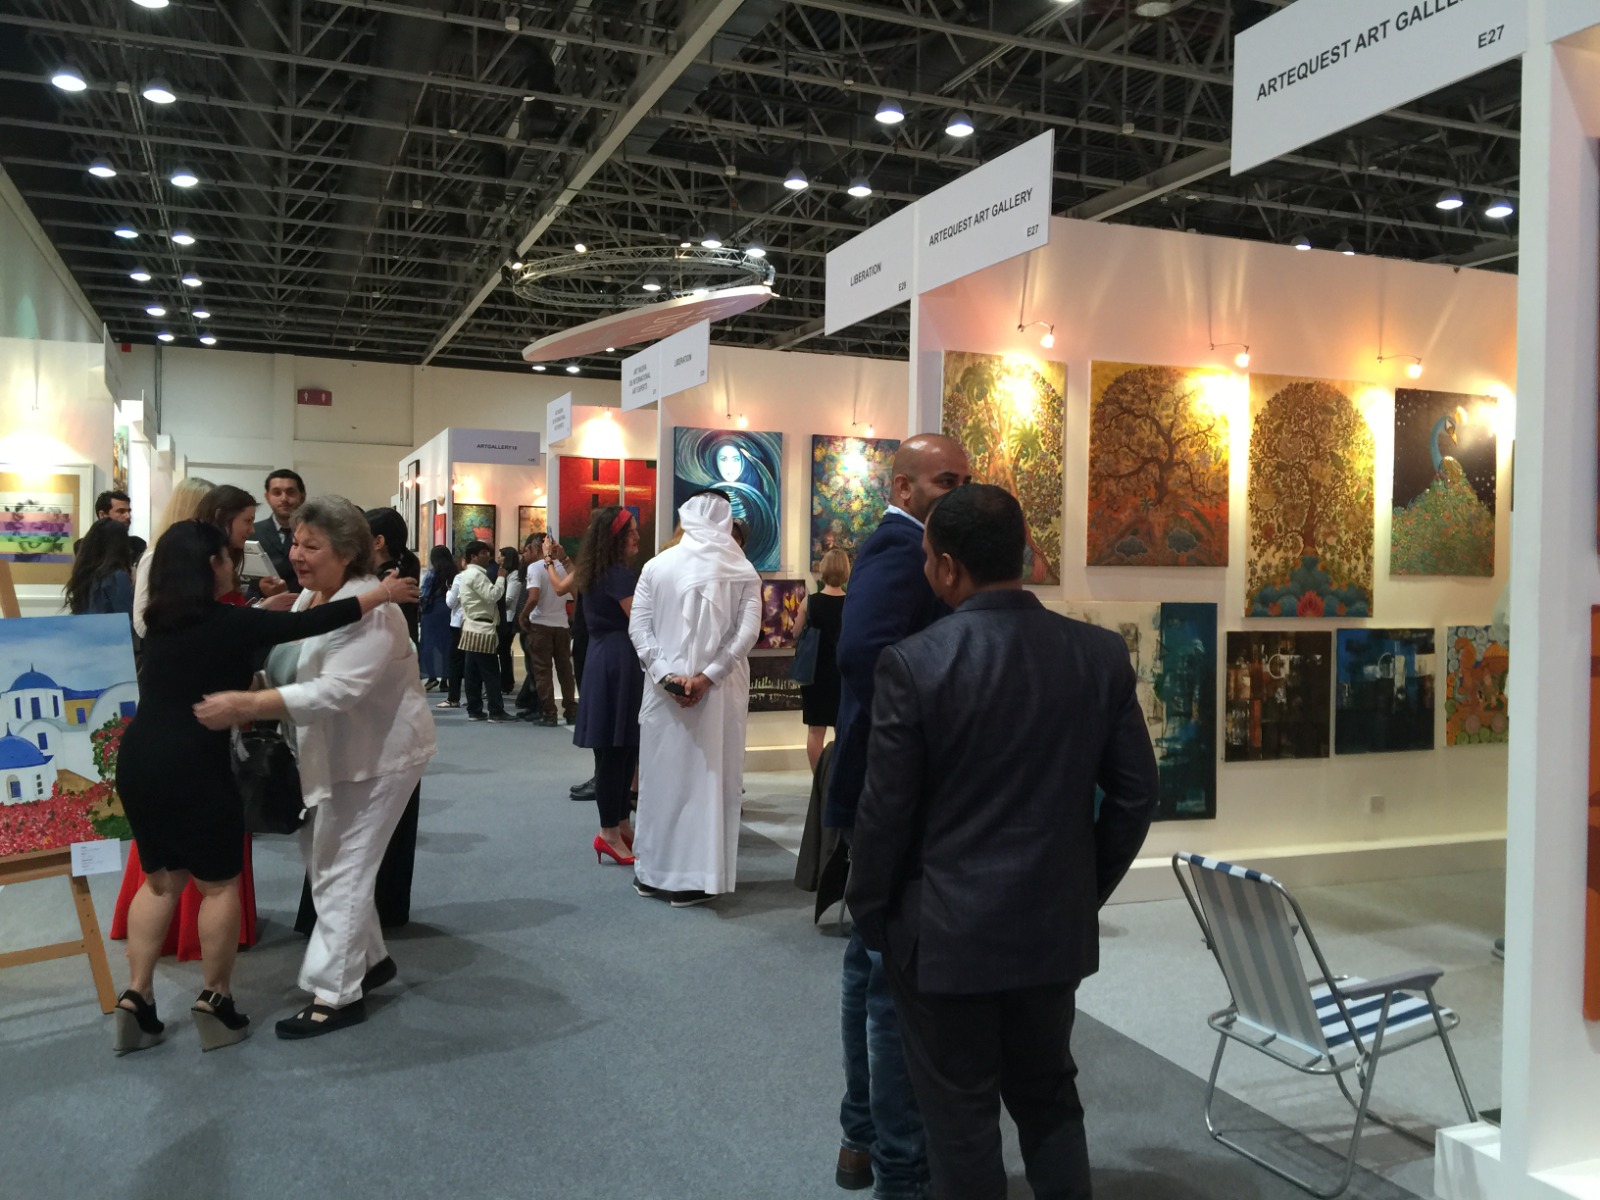 Artequest Dubai event